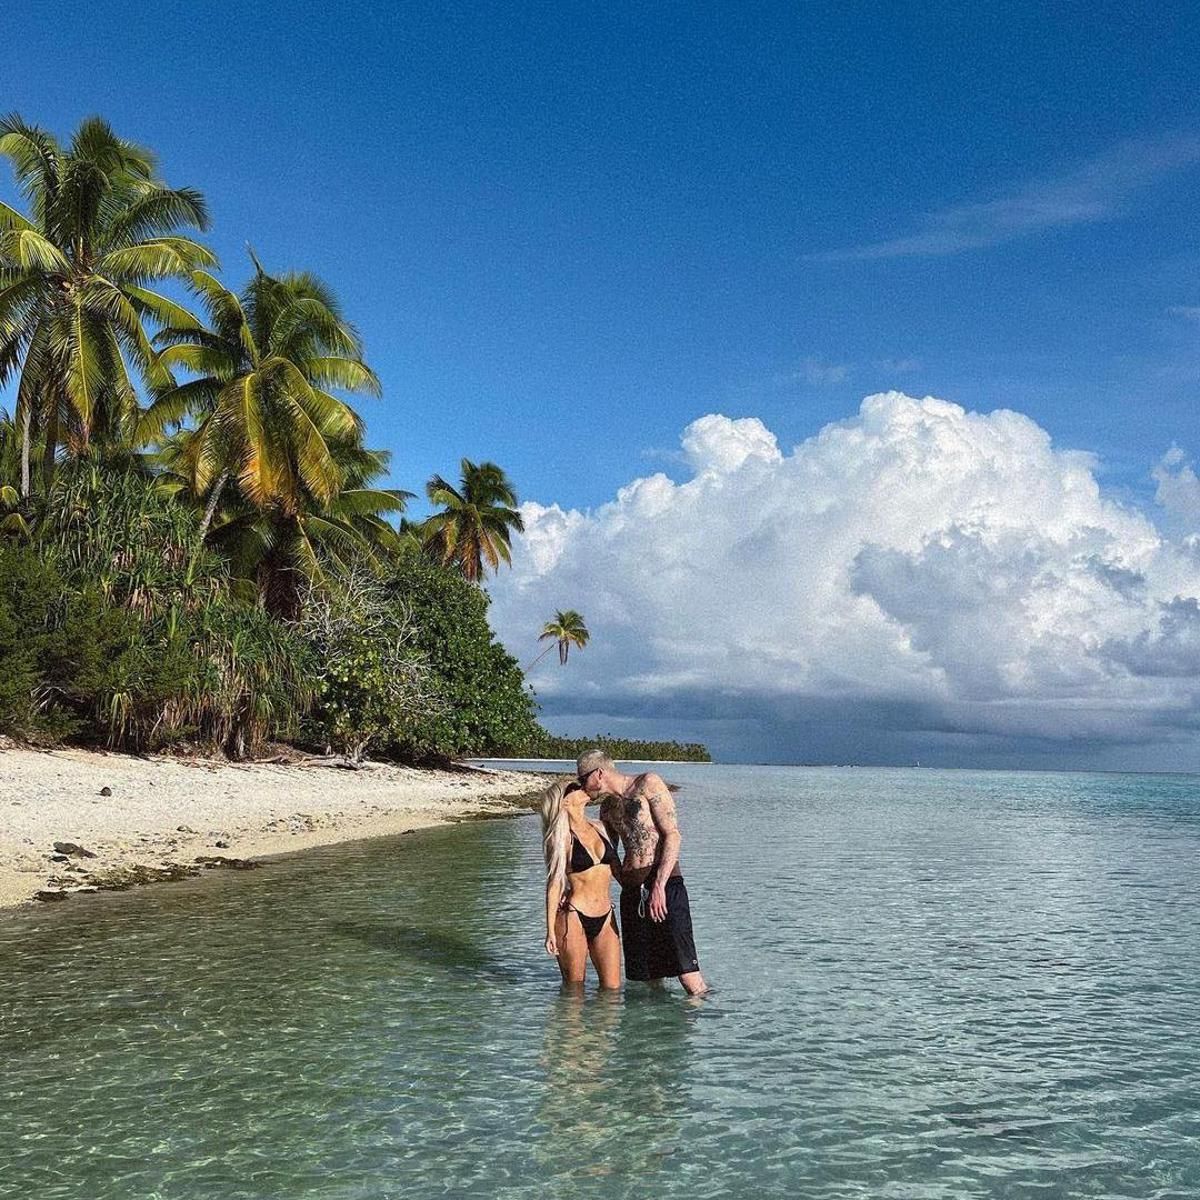 Kim Kardashian and Pete Davidson enjoy a tropical beach vacation Kim Kardashian and Pete Davidson enjoy a tropical beach vacation